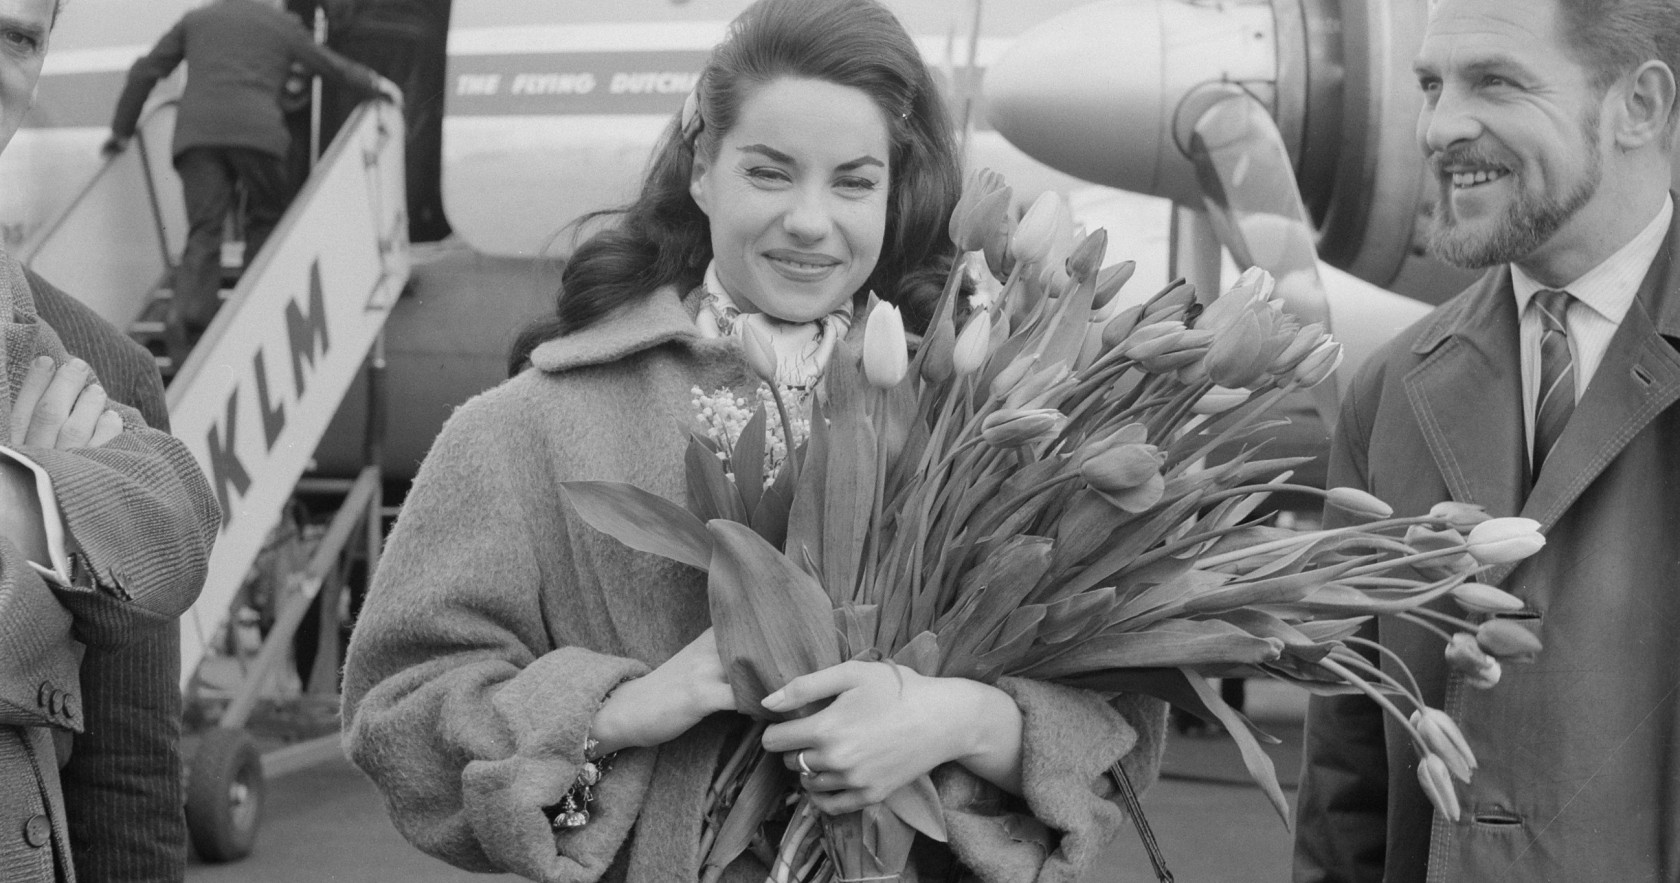 Eurovizija 1960 nugalėtoja Jacqueline Boyer su daina Tom Pillibi